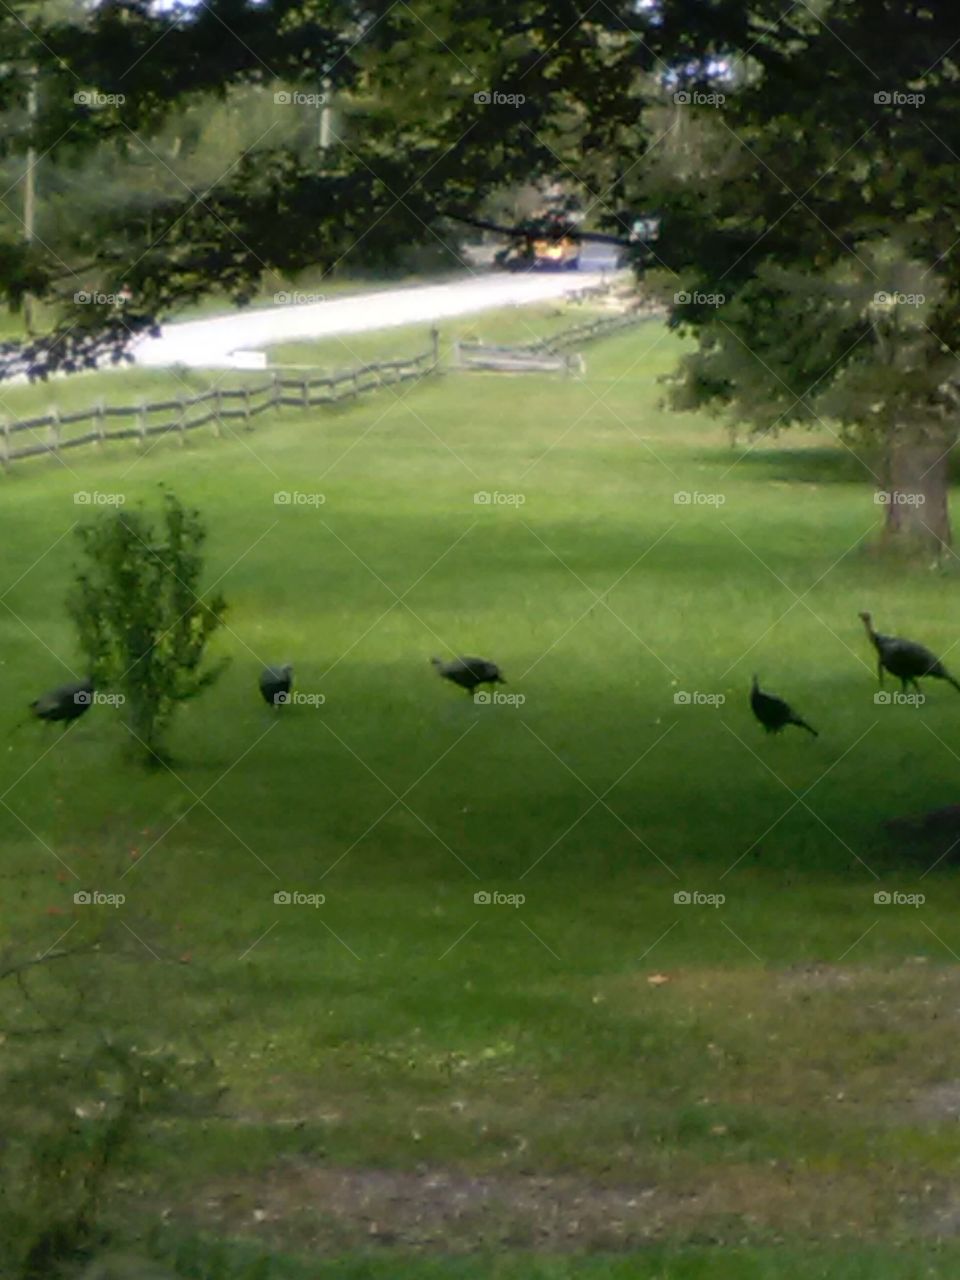 Wild Turkeys in the field